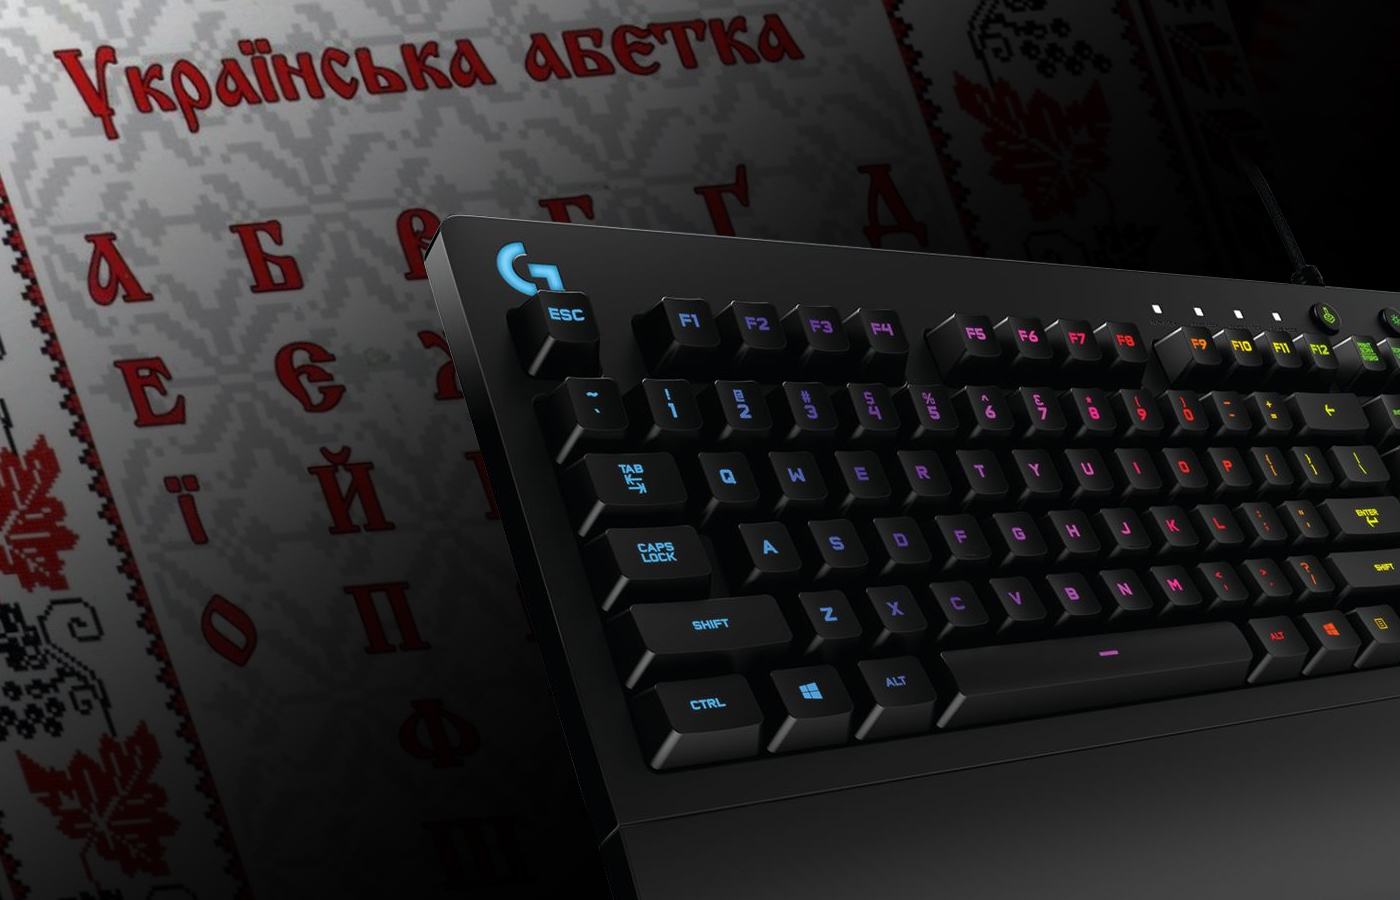 ⌨️ Logitech випускає геймерську клавіатуру з українською розкладкою: факти про неї + конкурс